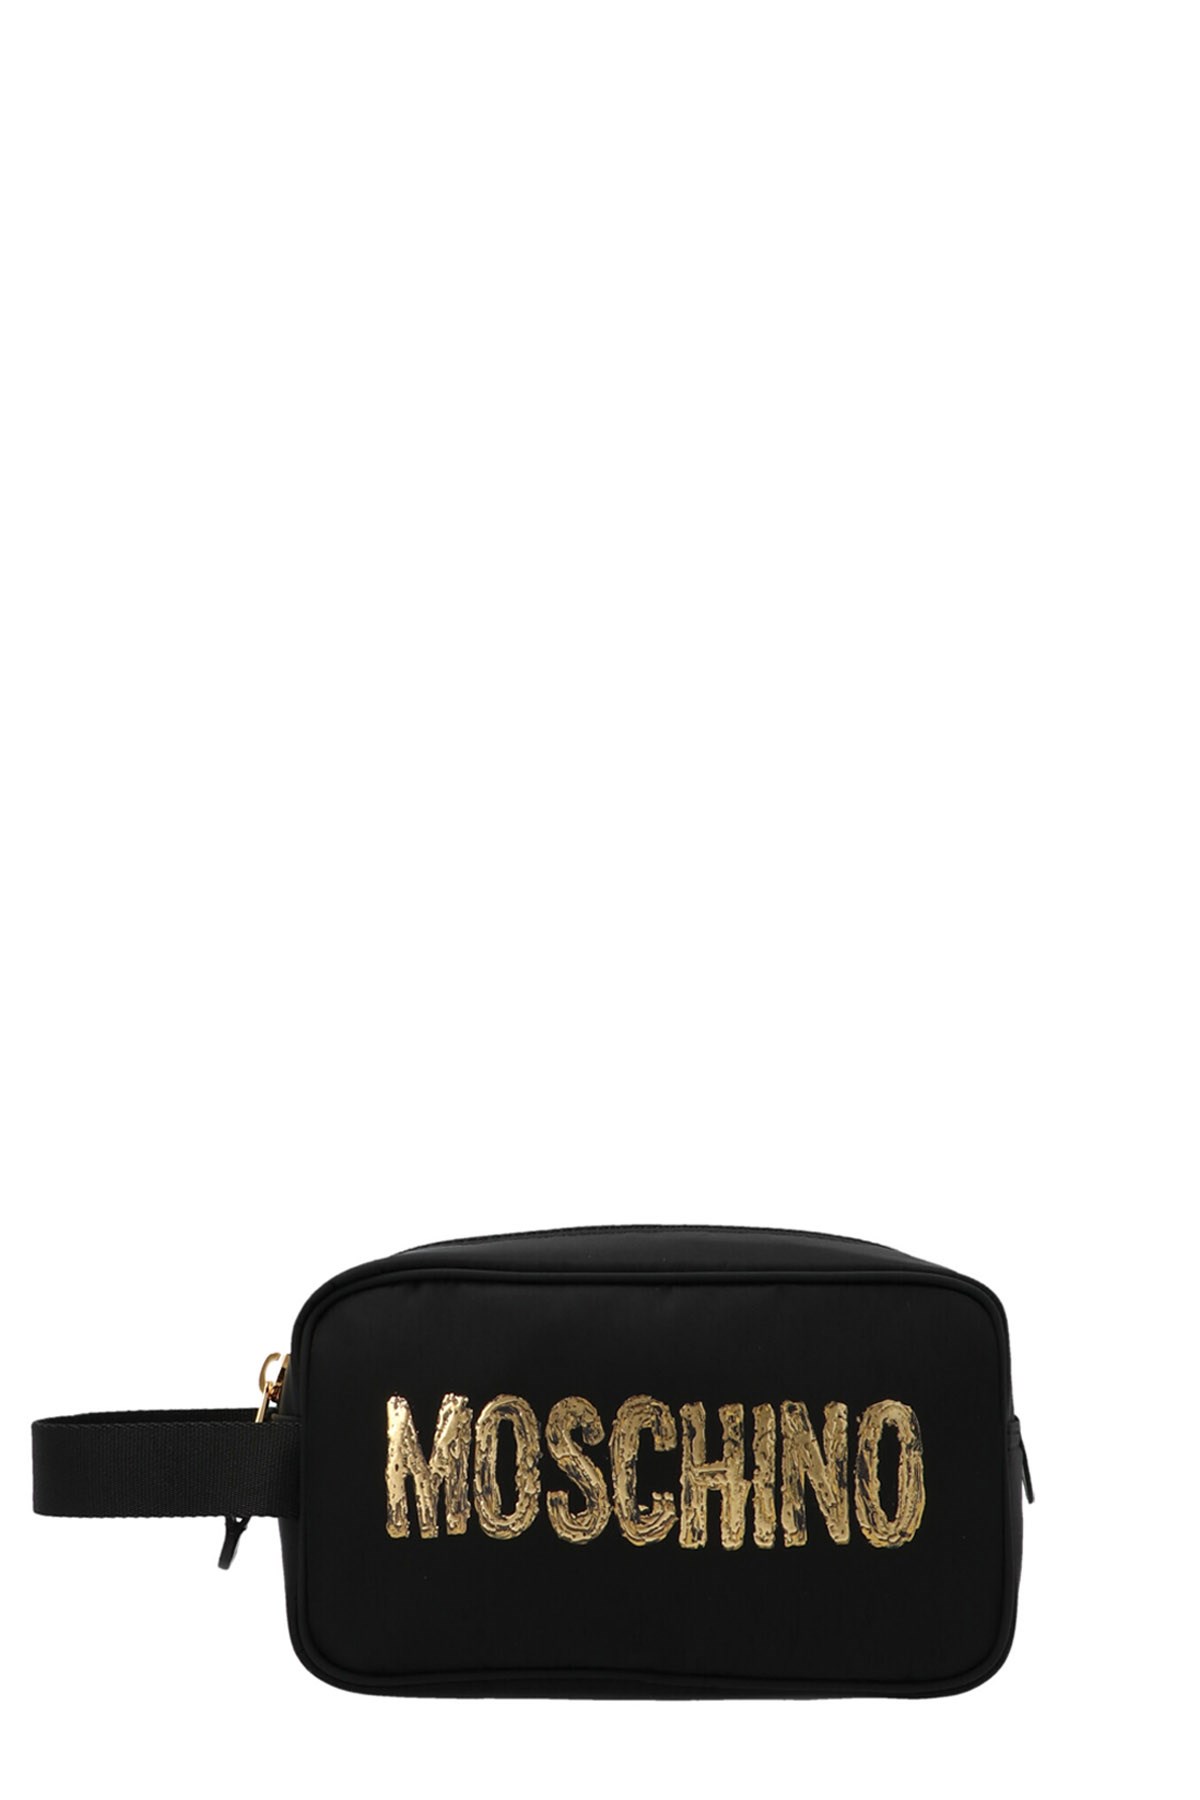 MOSCHINO Logo Wash Bag